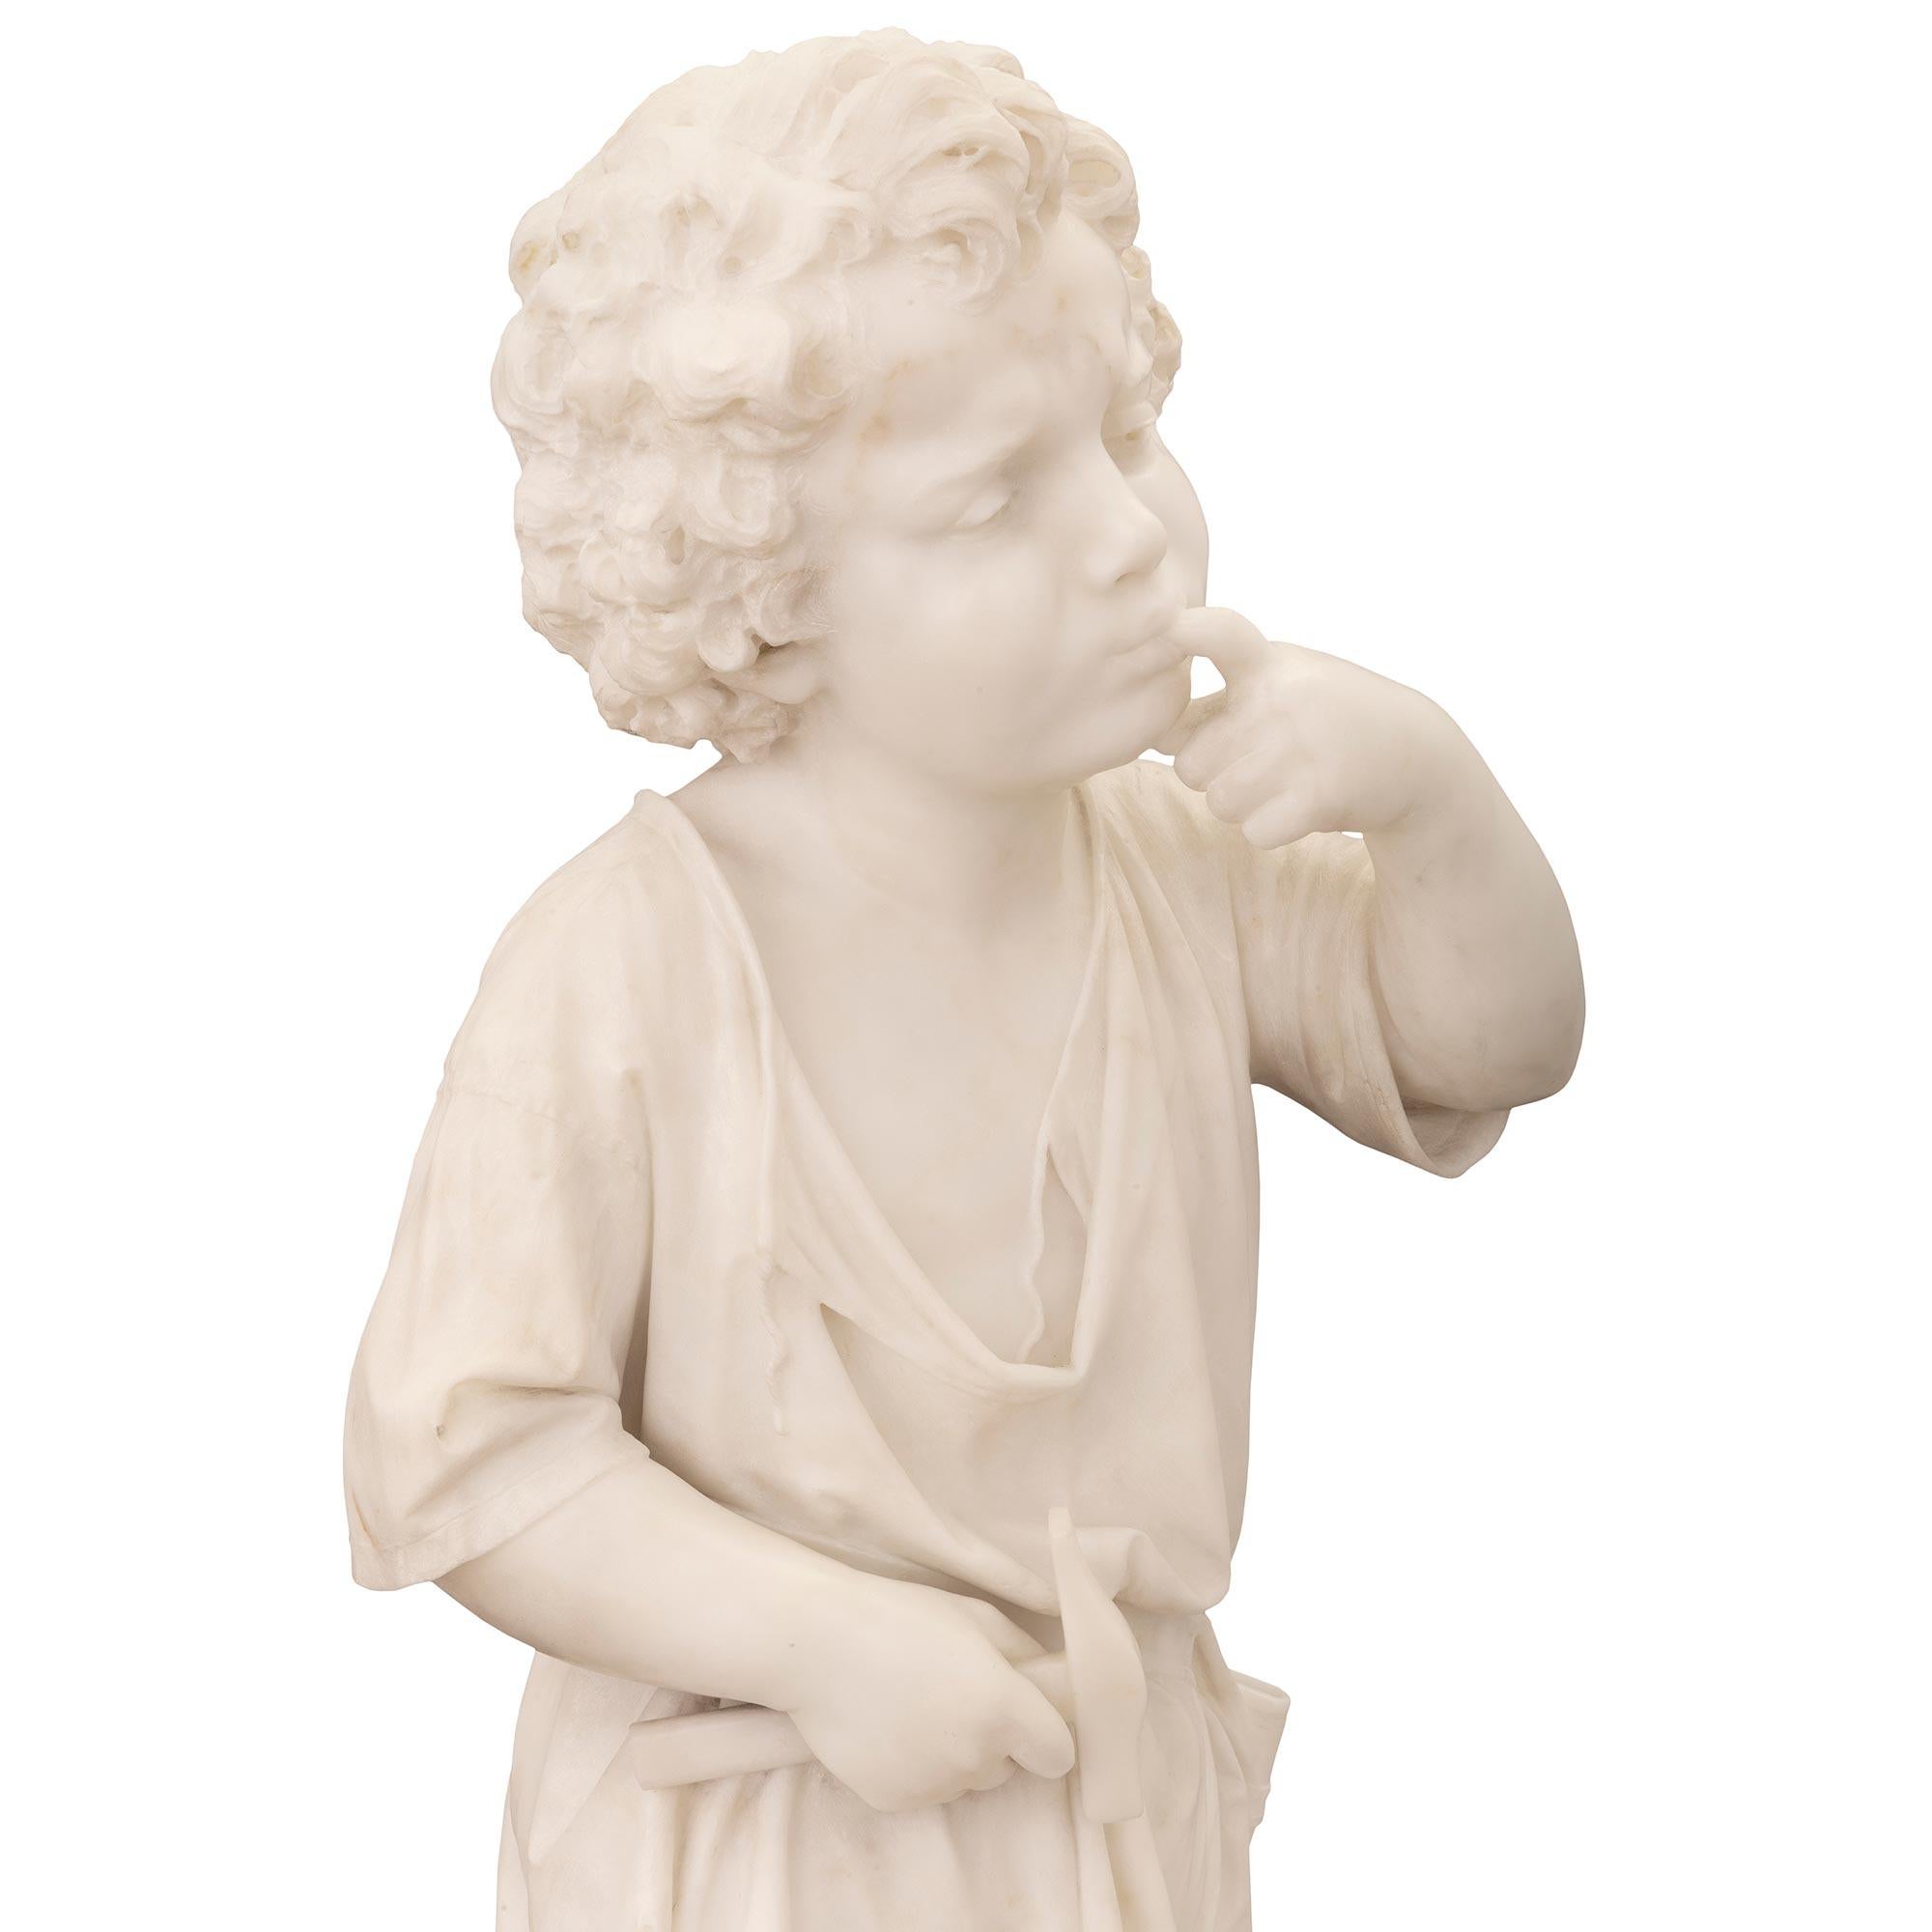 Italian 19th Century White Carrara Marble Statue of a Boy Signed Ugo Zannoni For Sale 1